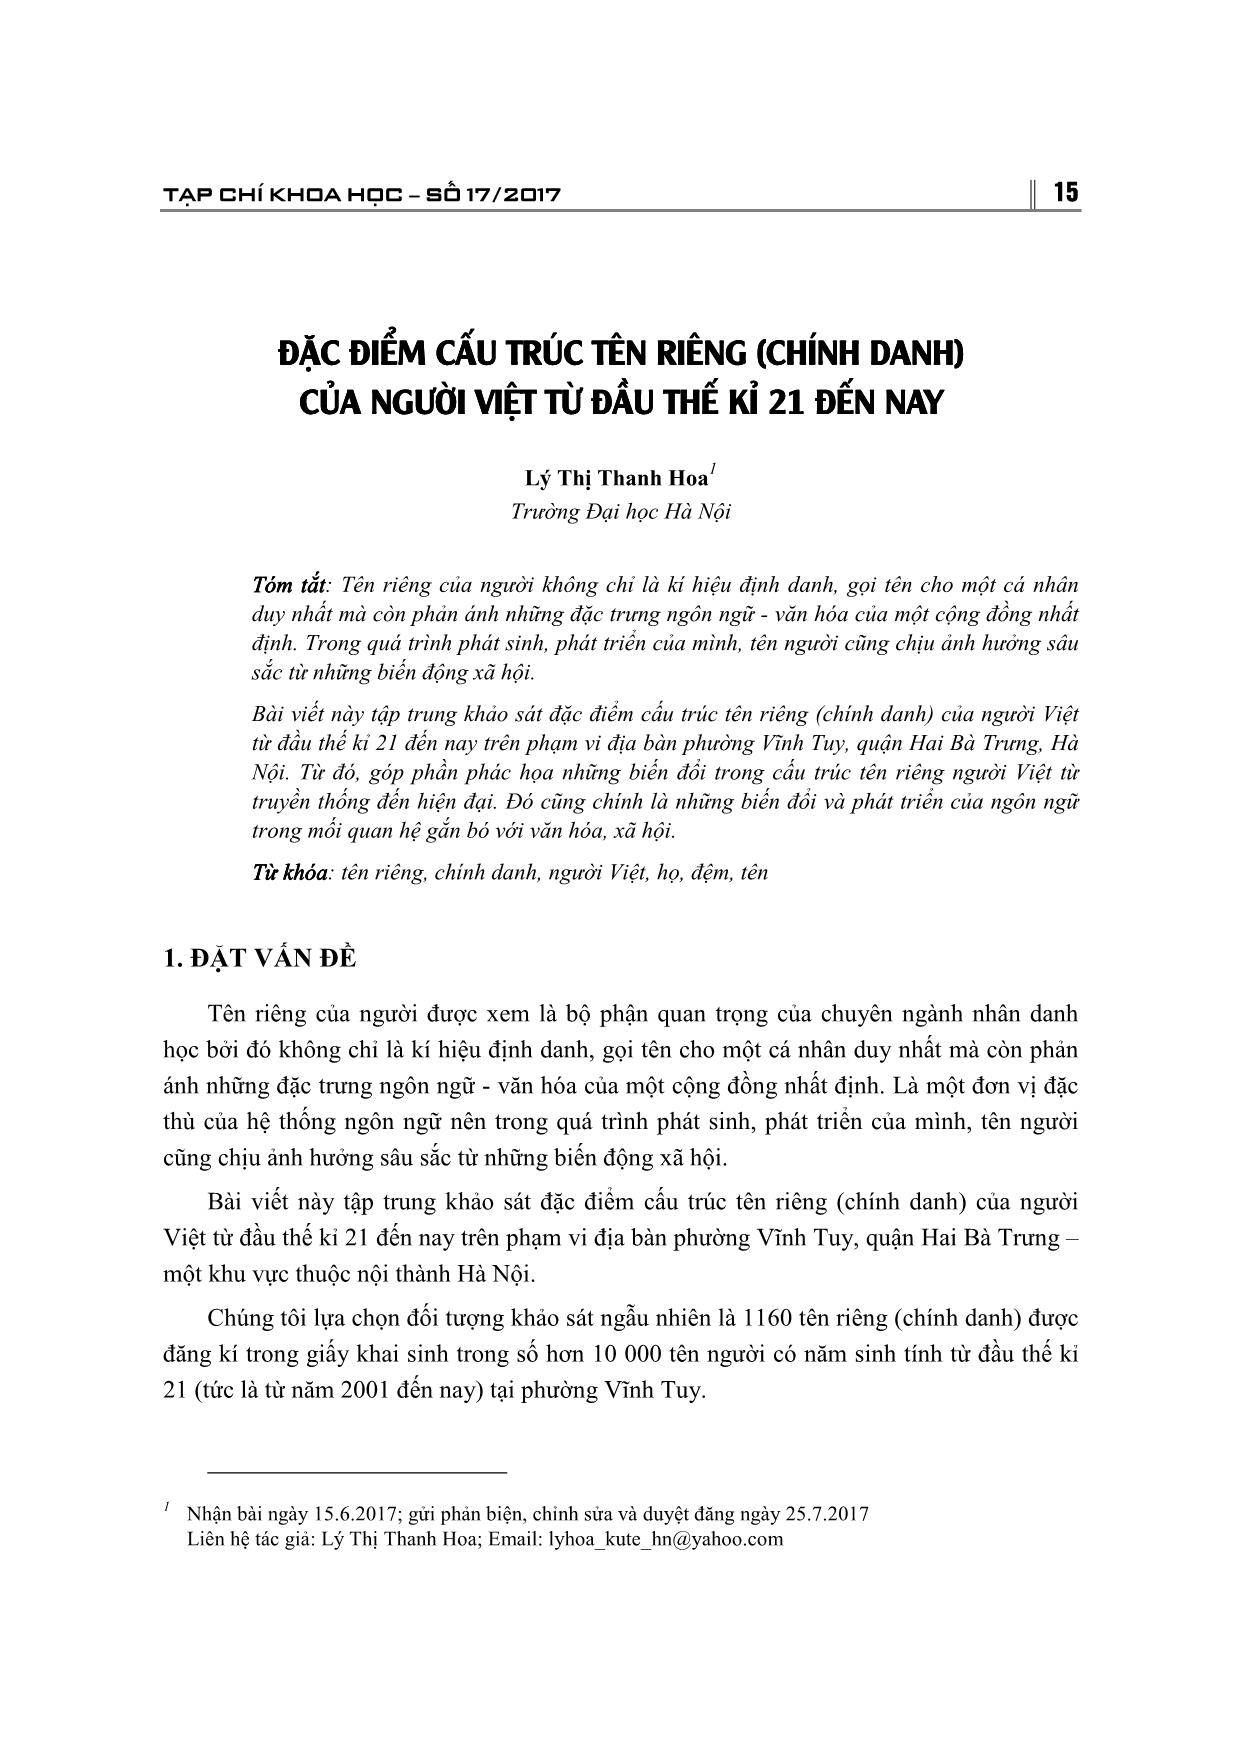 Đặc điểm cấu trúc tên riêng (chính danh) của người Việt từ đầu thế kỉ 21 đến nay trang 1